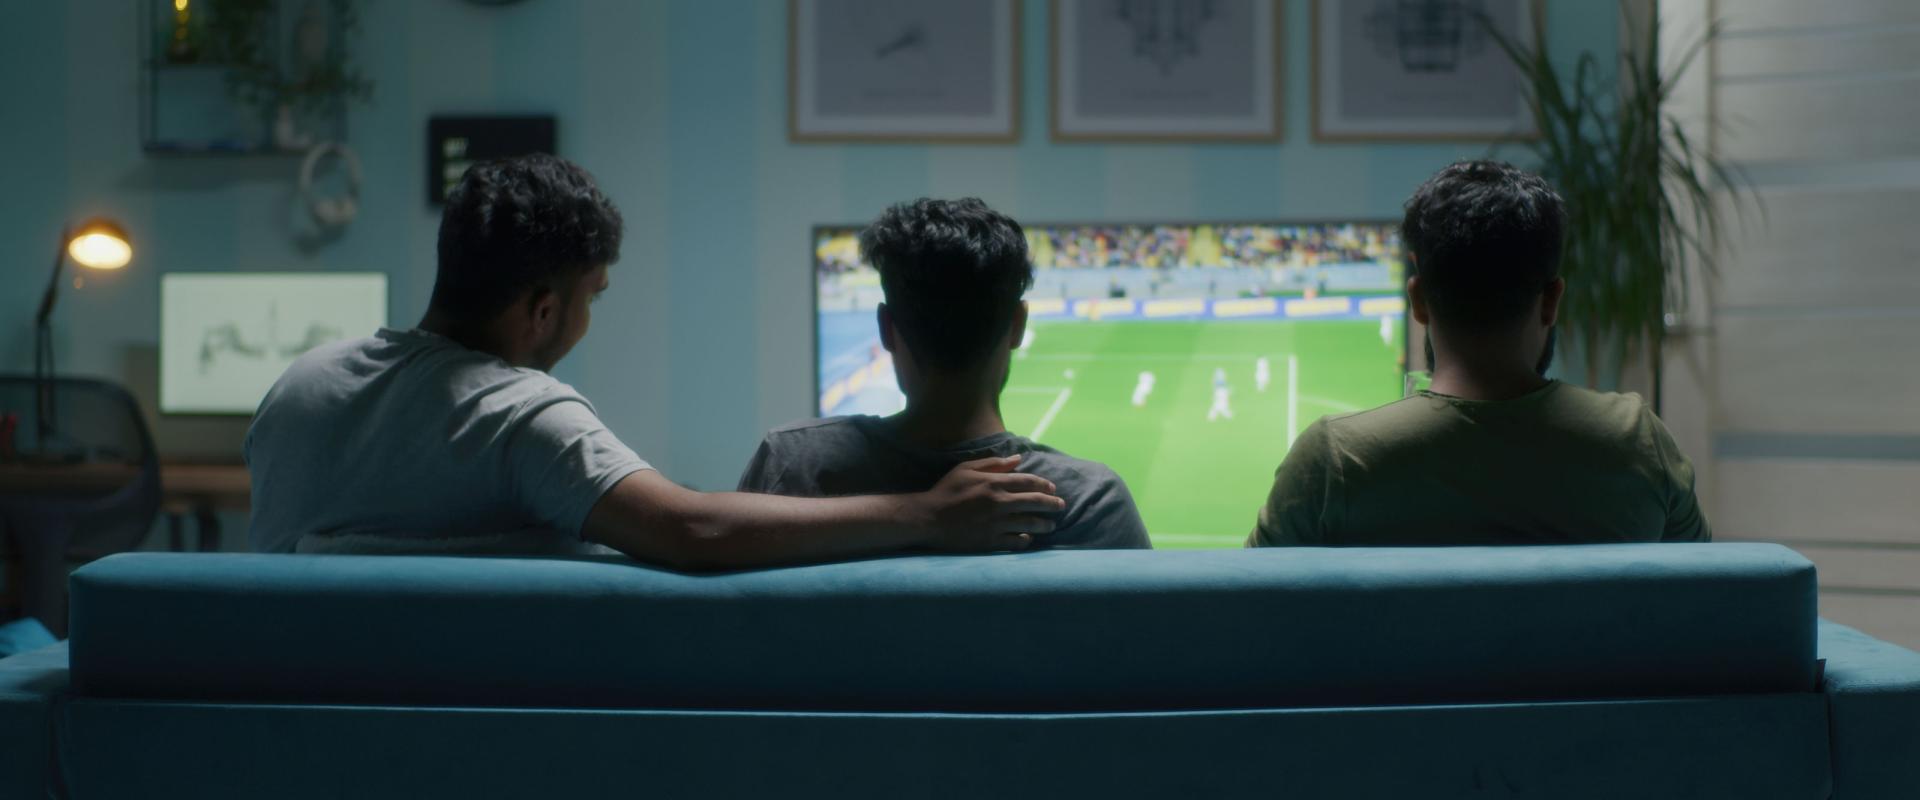 Men watching football match on tv